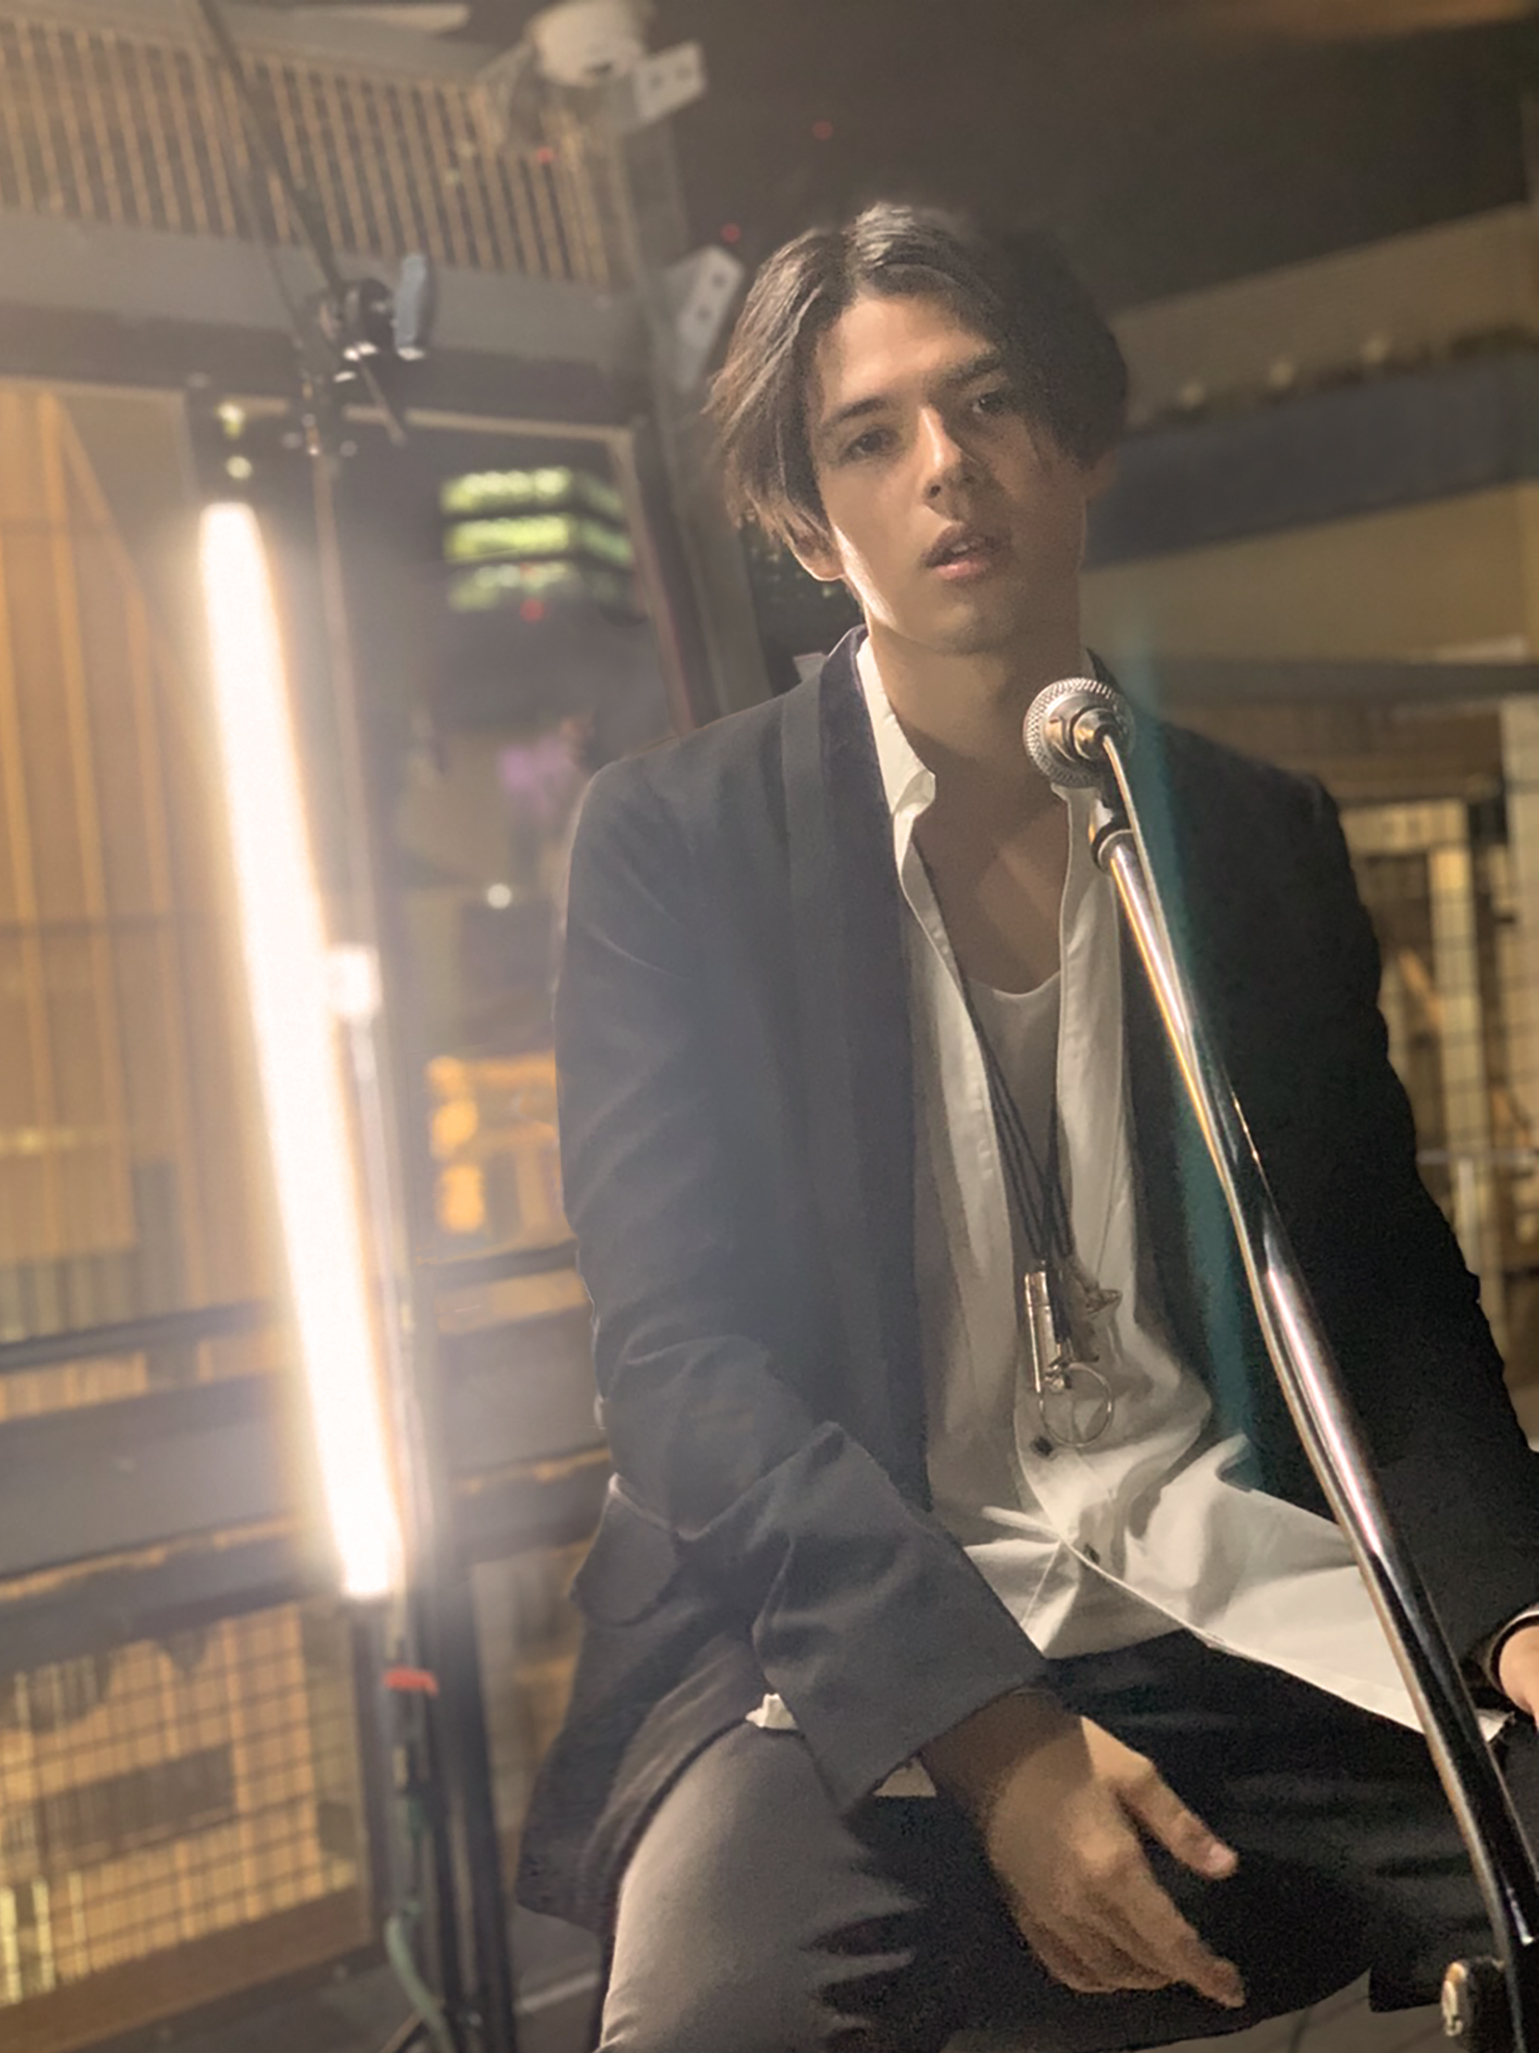 尾崎豊の名曲にイマドキの若者も共感 謎のハーフイケメンが 卒業 を熱唱する動画が話題 ニコニコニュース